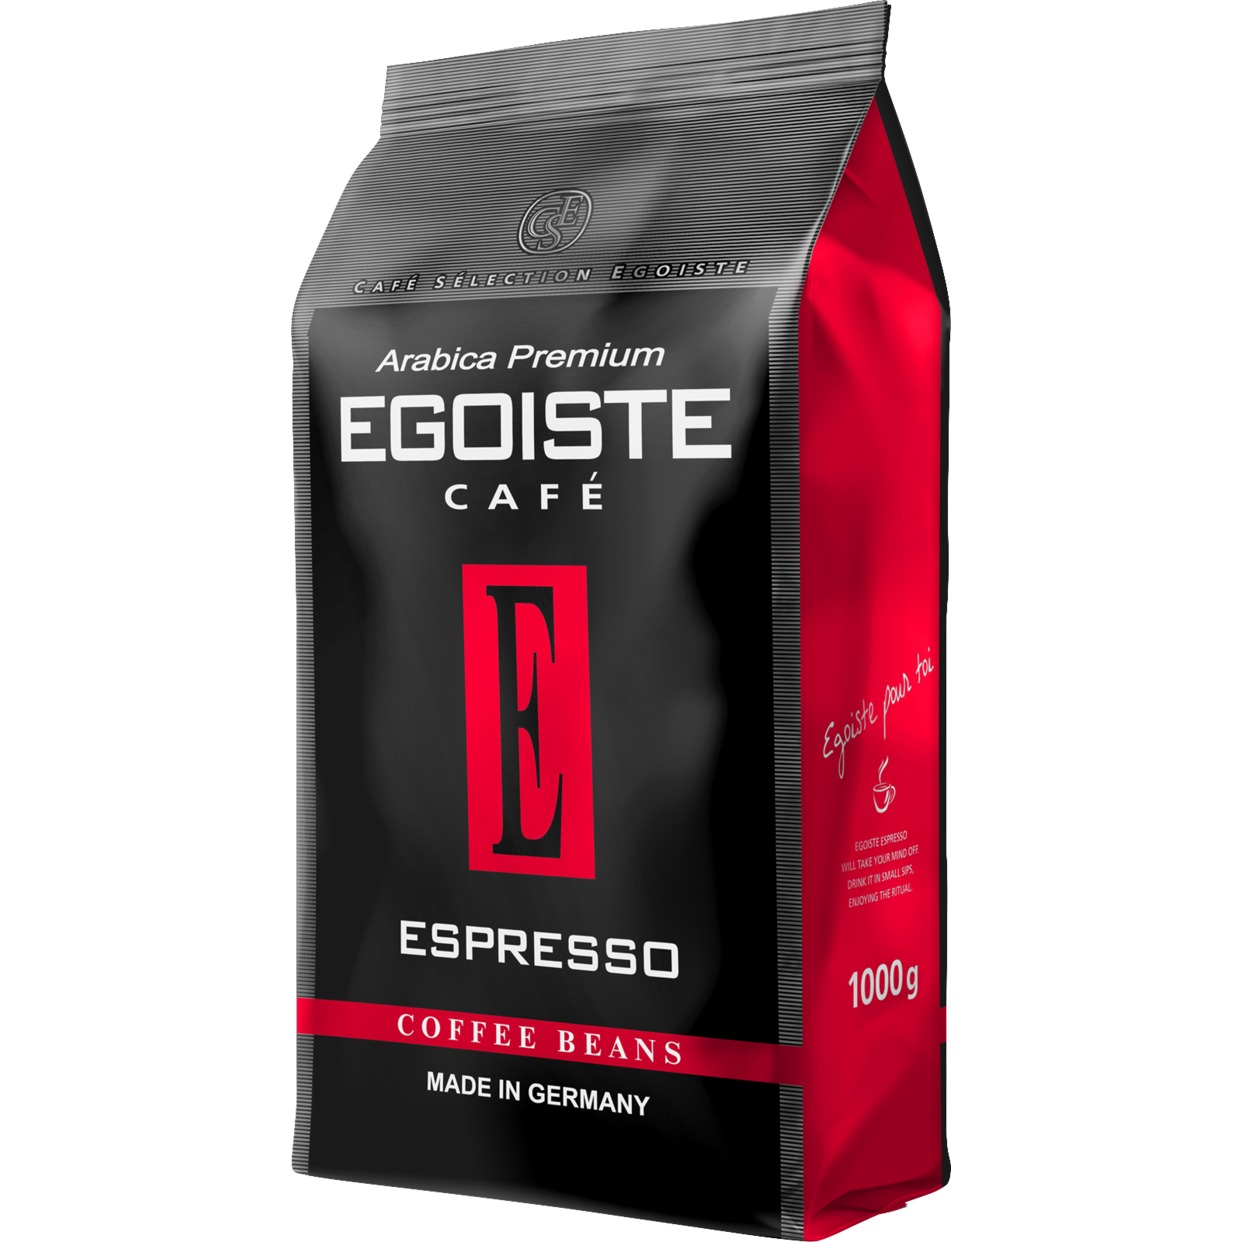 Кофе в зернах EGOISTE Espresso 1000г по акции в Пятерочке